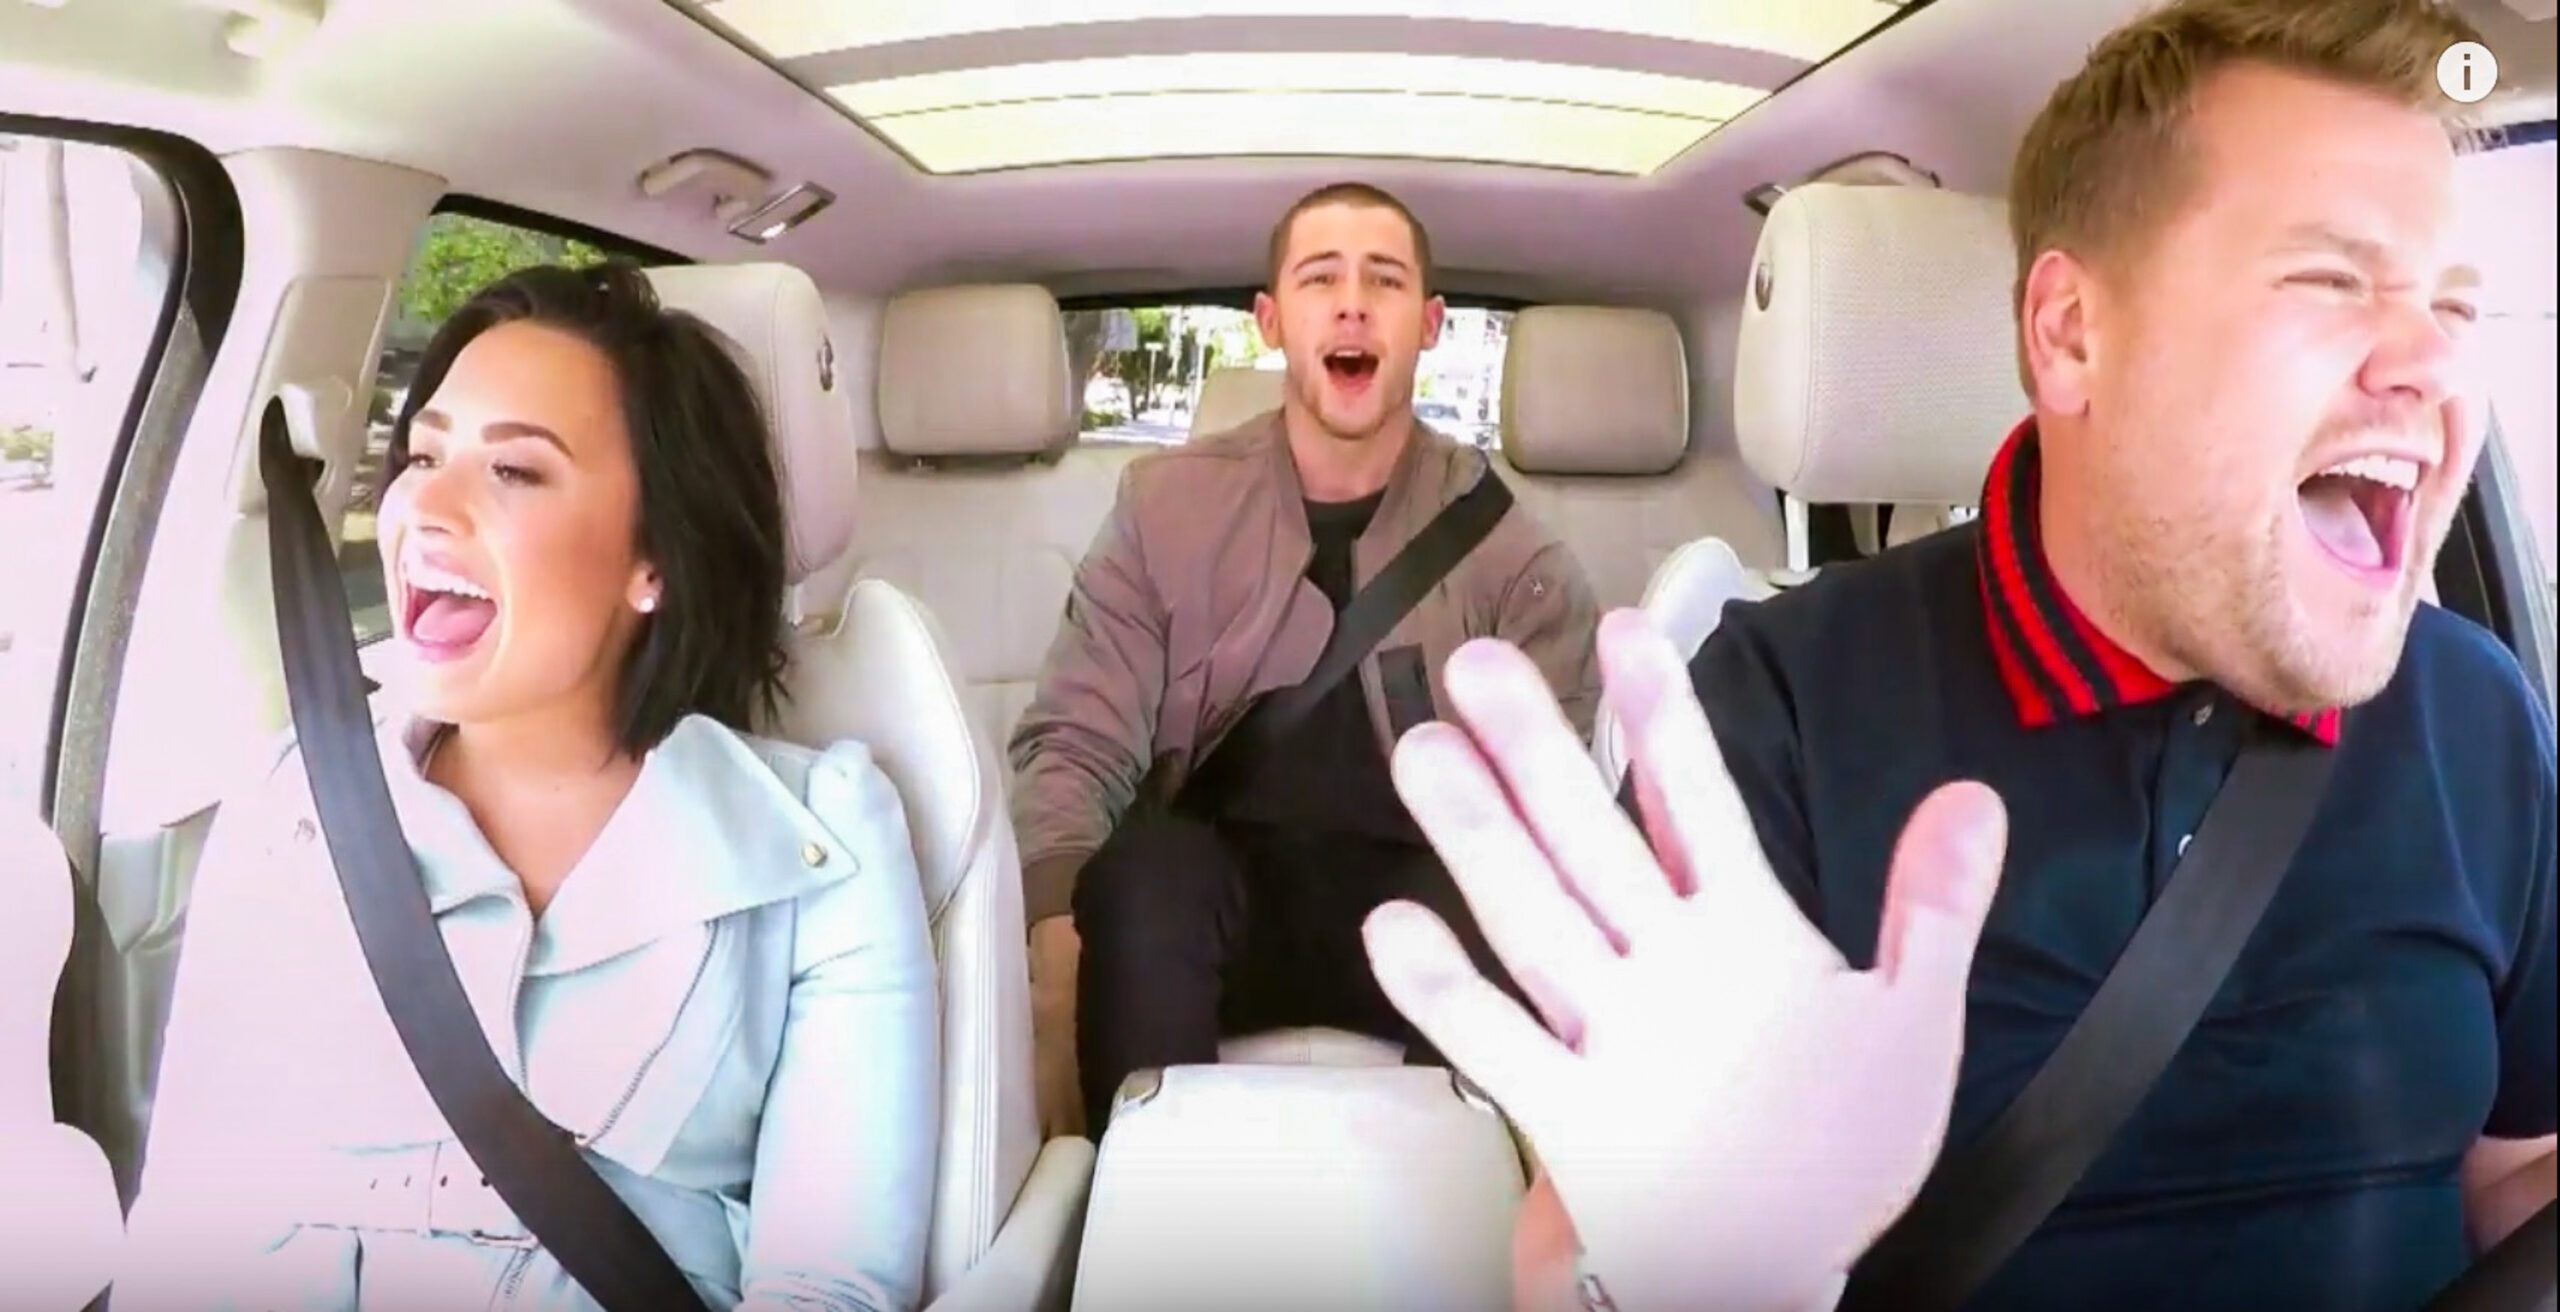 WATCH: Demi Lovato, Nick Jonas in 'Carpool Karaoke'